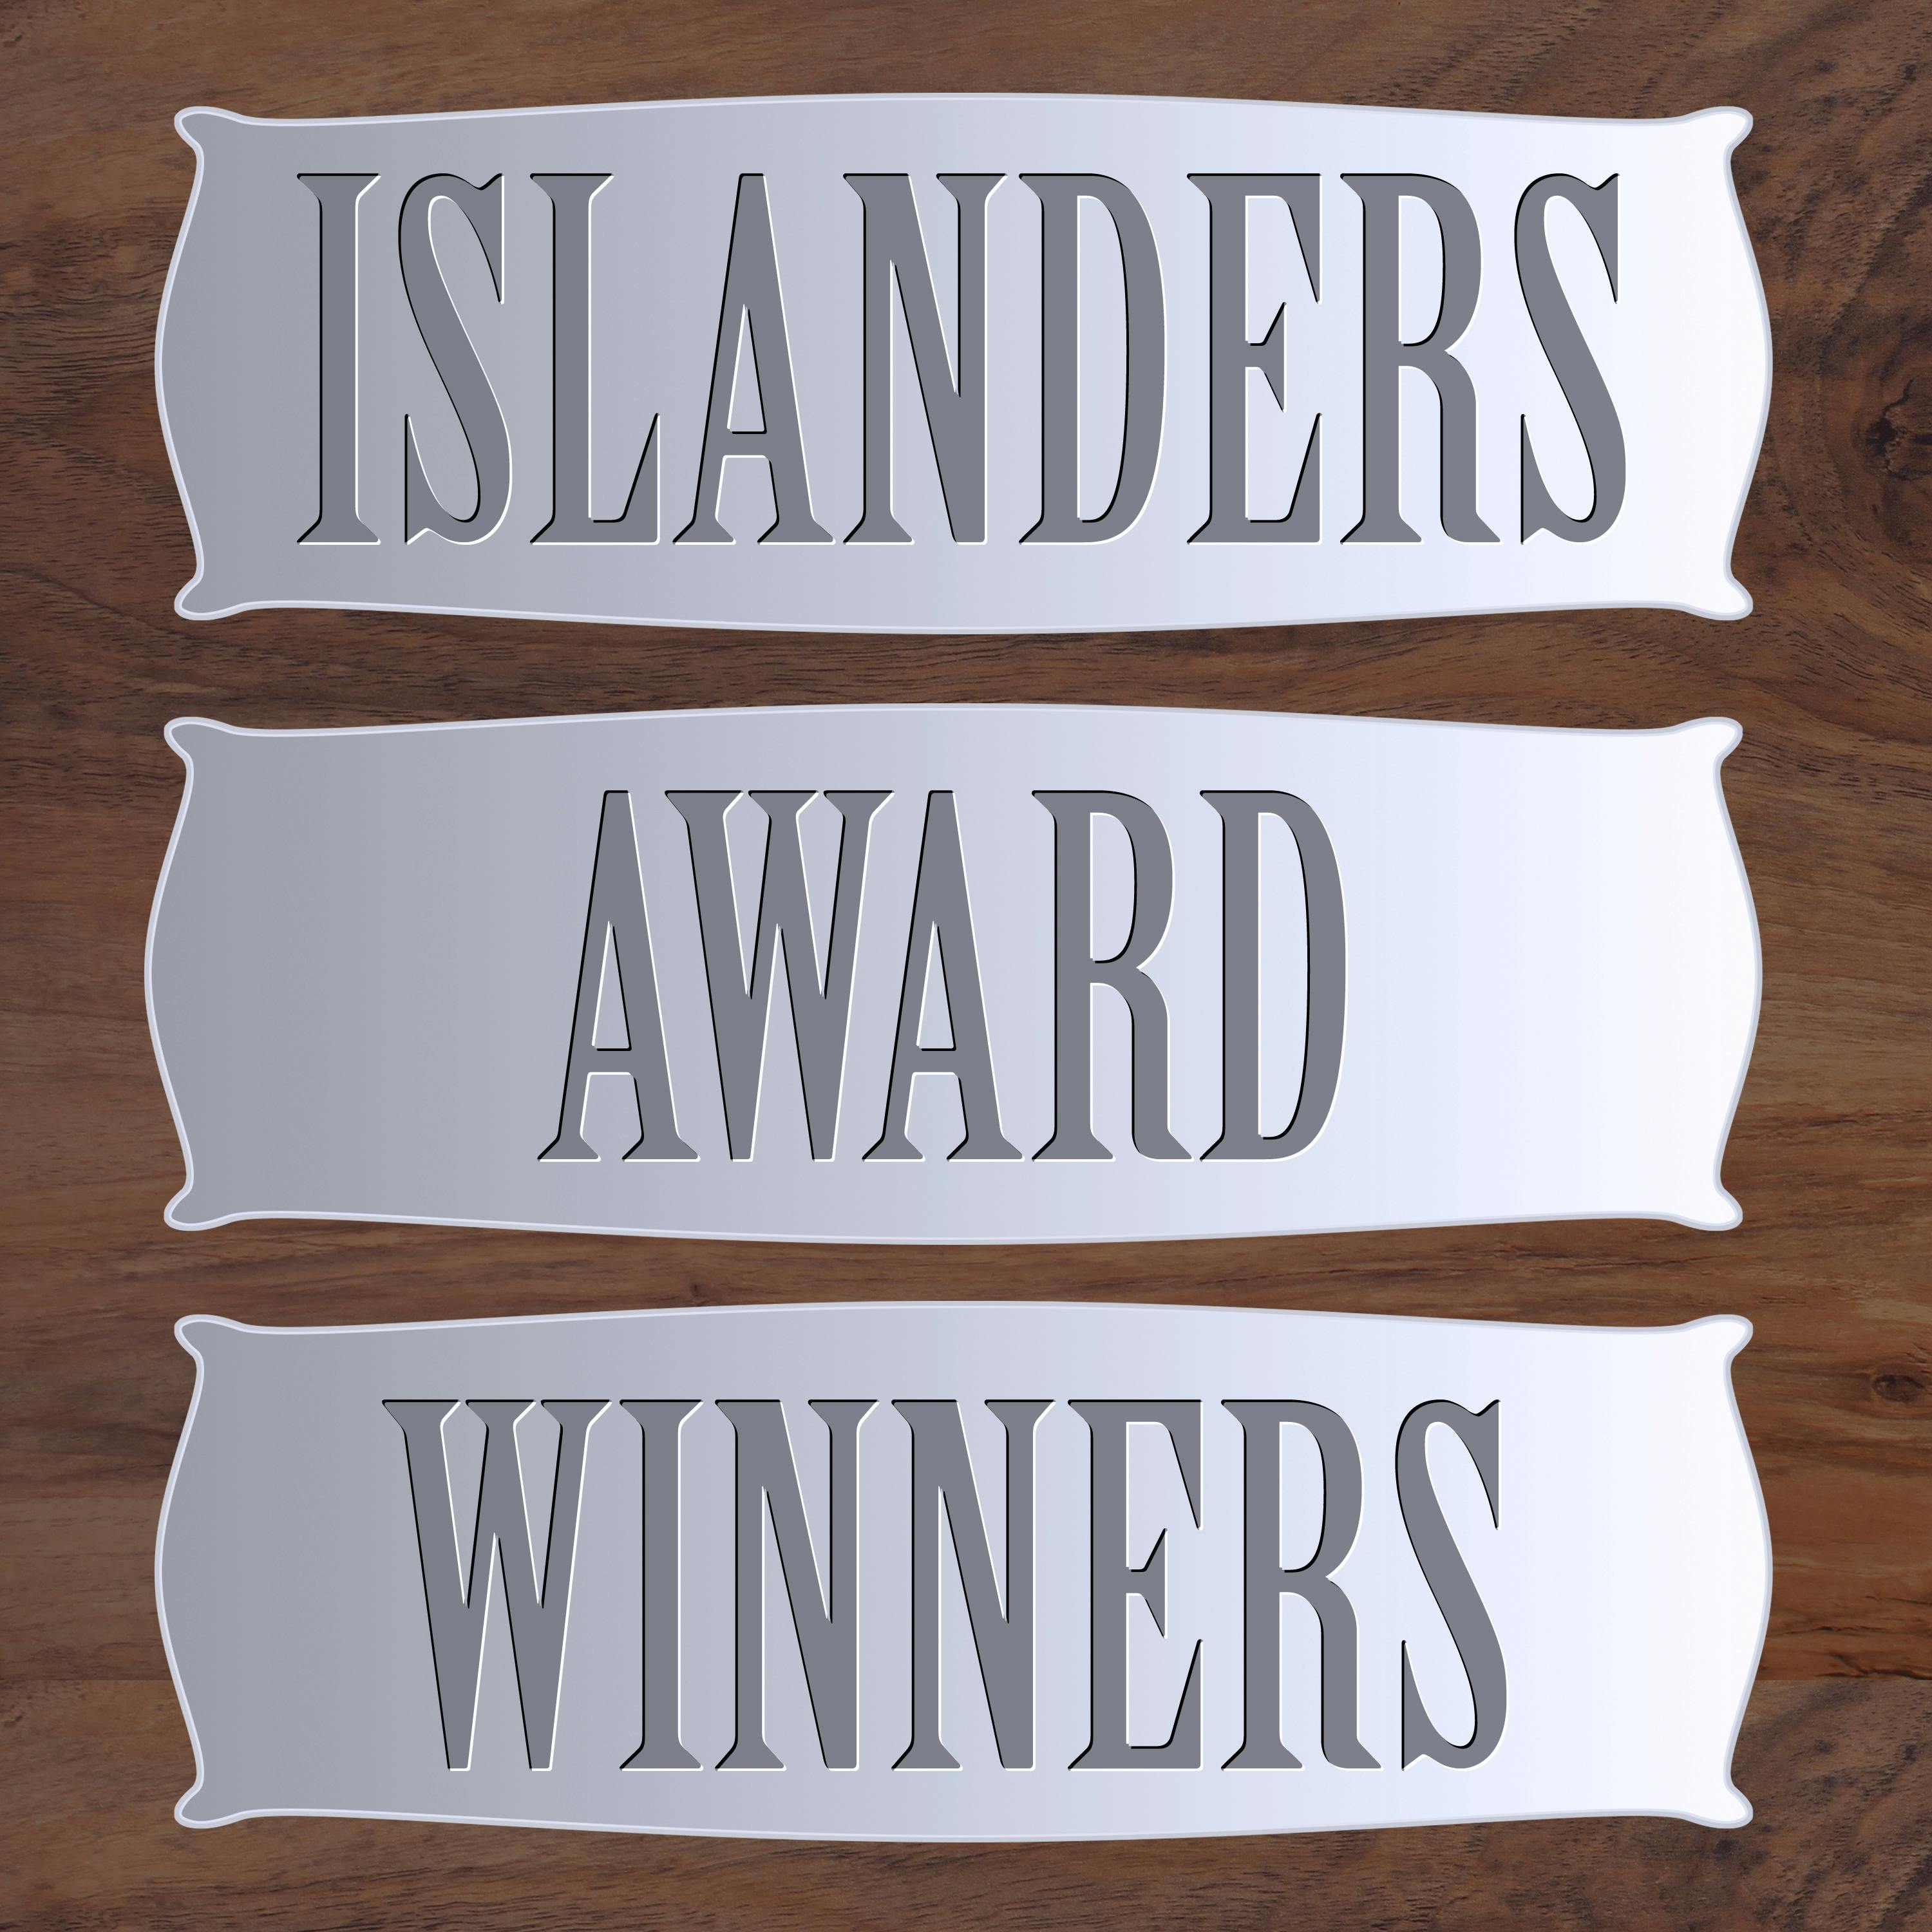 Islanders Award Winners - Bryan Trottier, Calder Trophy, 1976